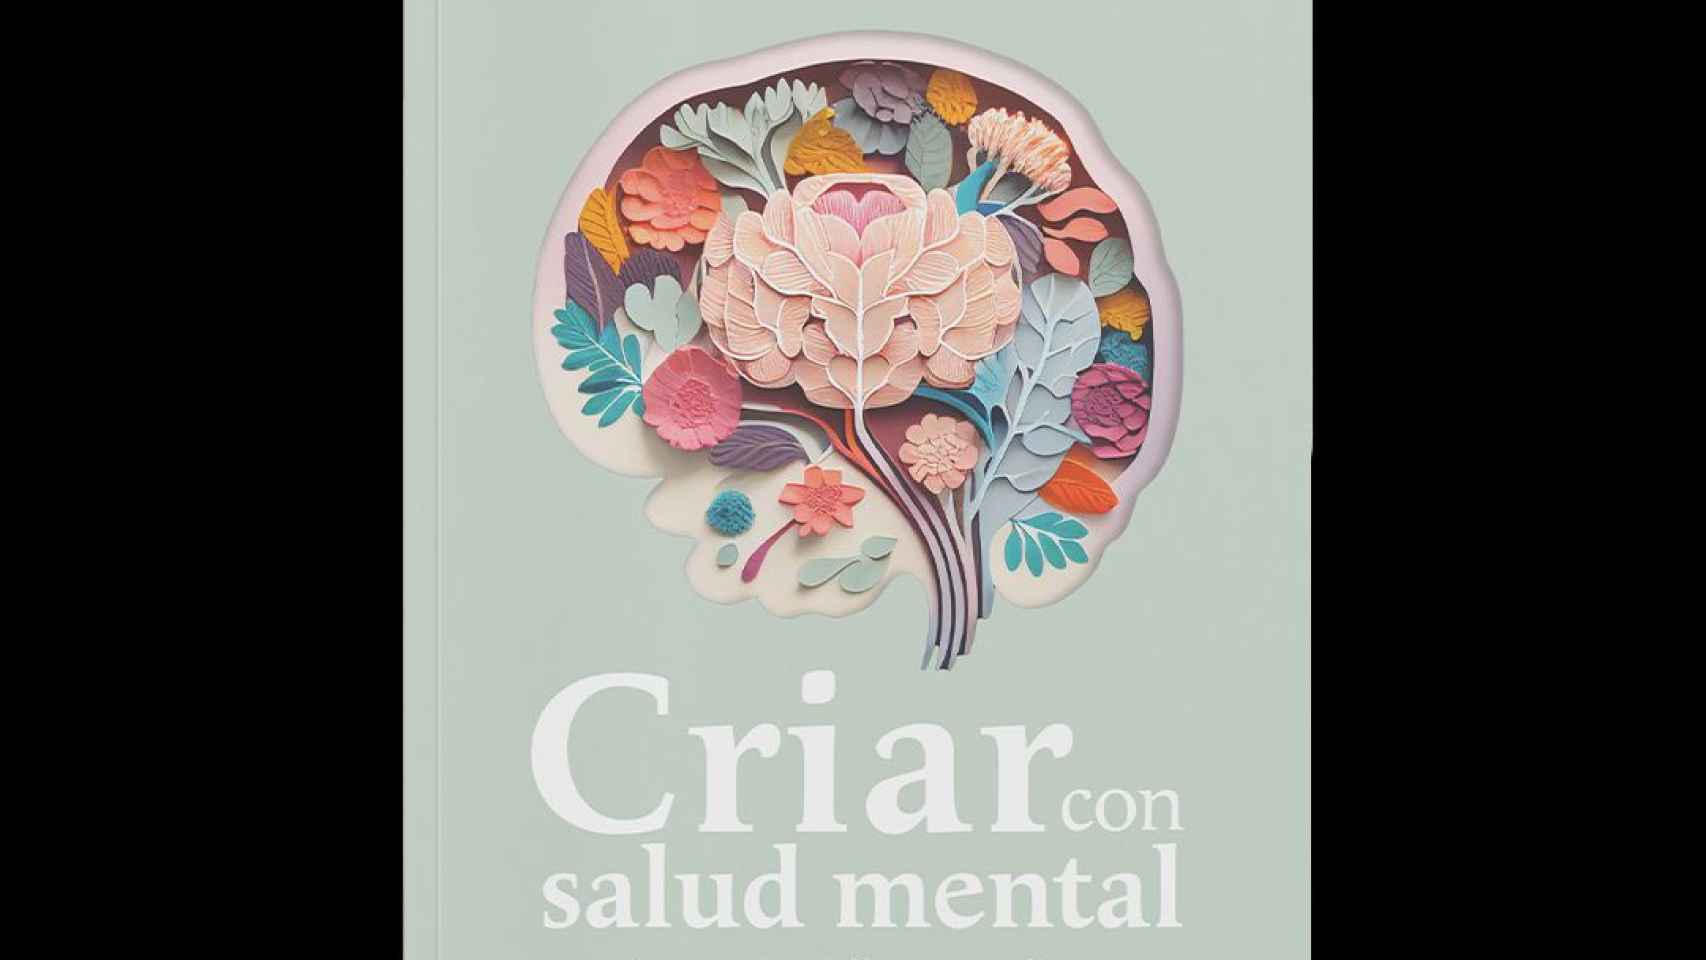 ‘Criar con salud mental’, por María Velasco